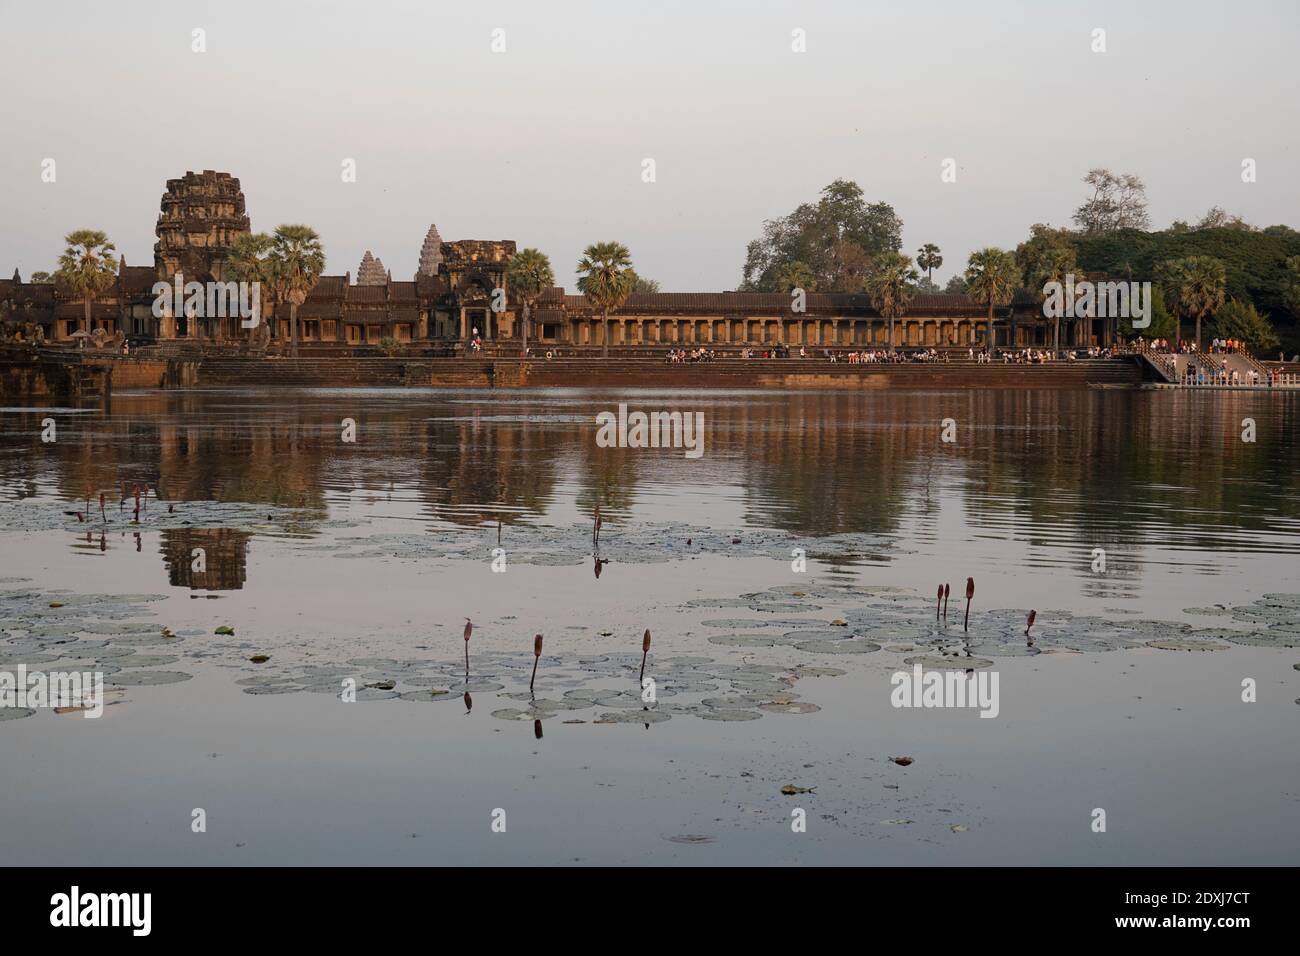 Lake bordering Angkor Wat temple Stock Photo